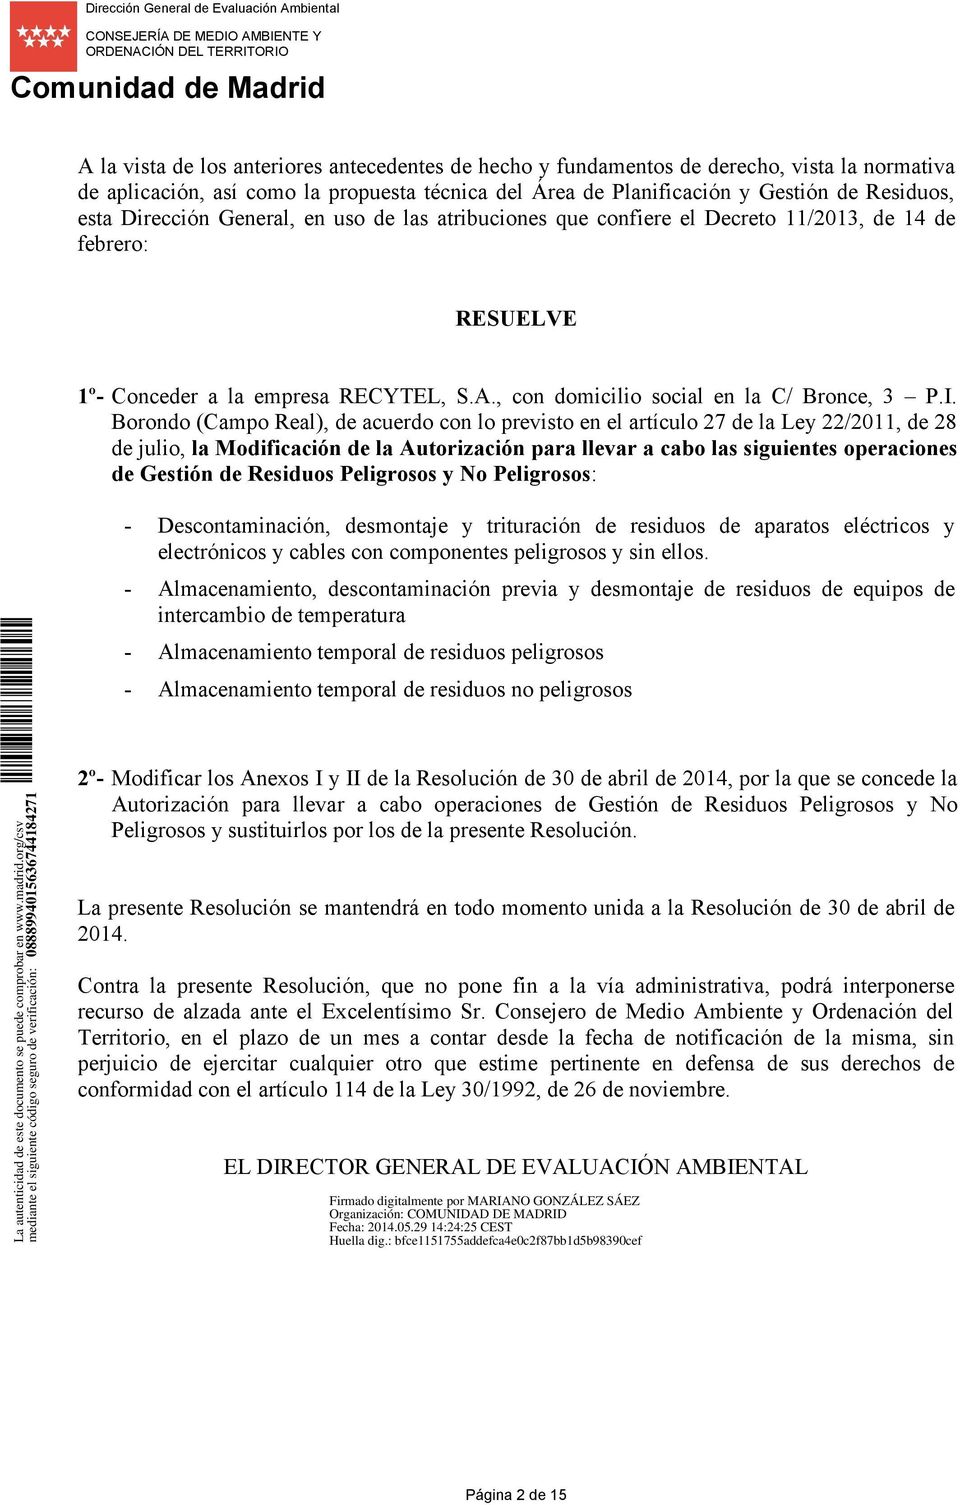 Borondo (Campo Real), de acuerdo con lo previsto en el artículo 27 de la Ley 22/2011, de 28 de julio, la Modificación de la Autorización para llevar a cabo las siguientes operaciones de Gestión de